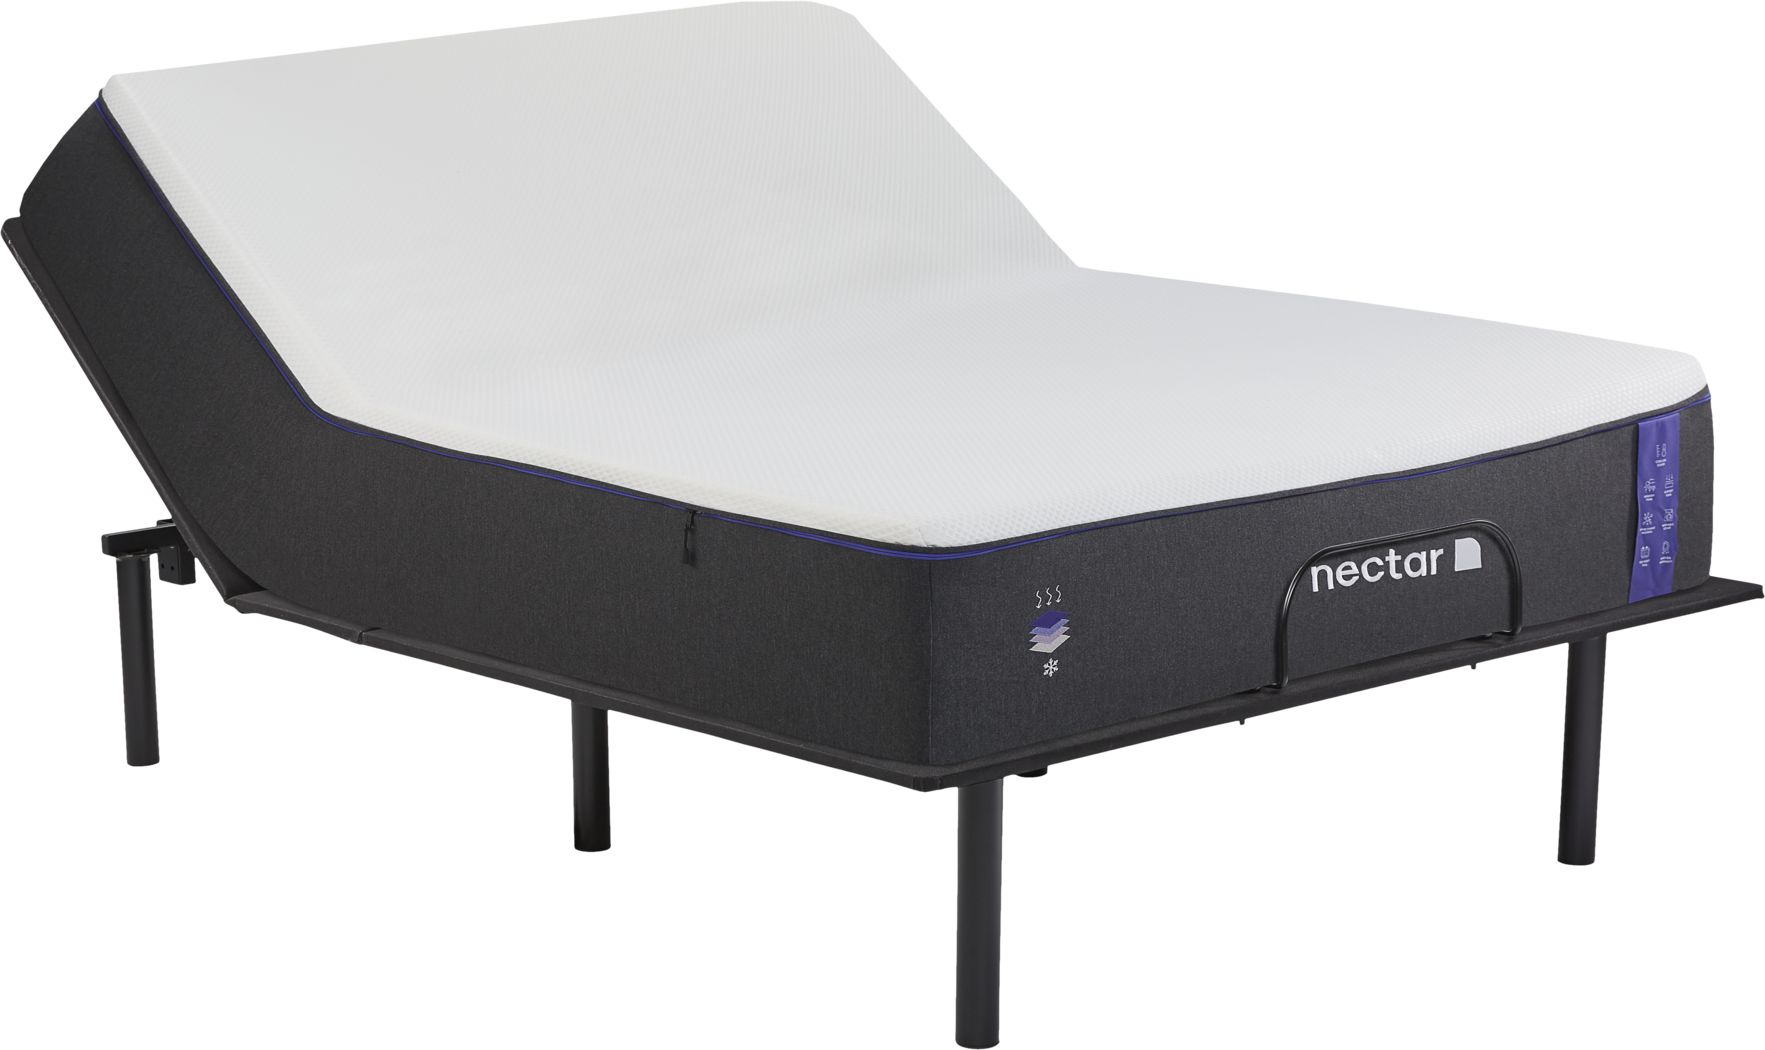 nectar king mattress 12 inch